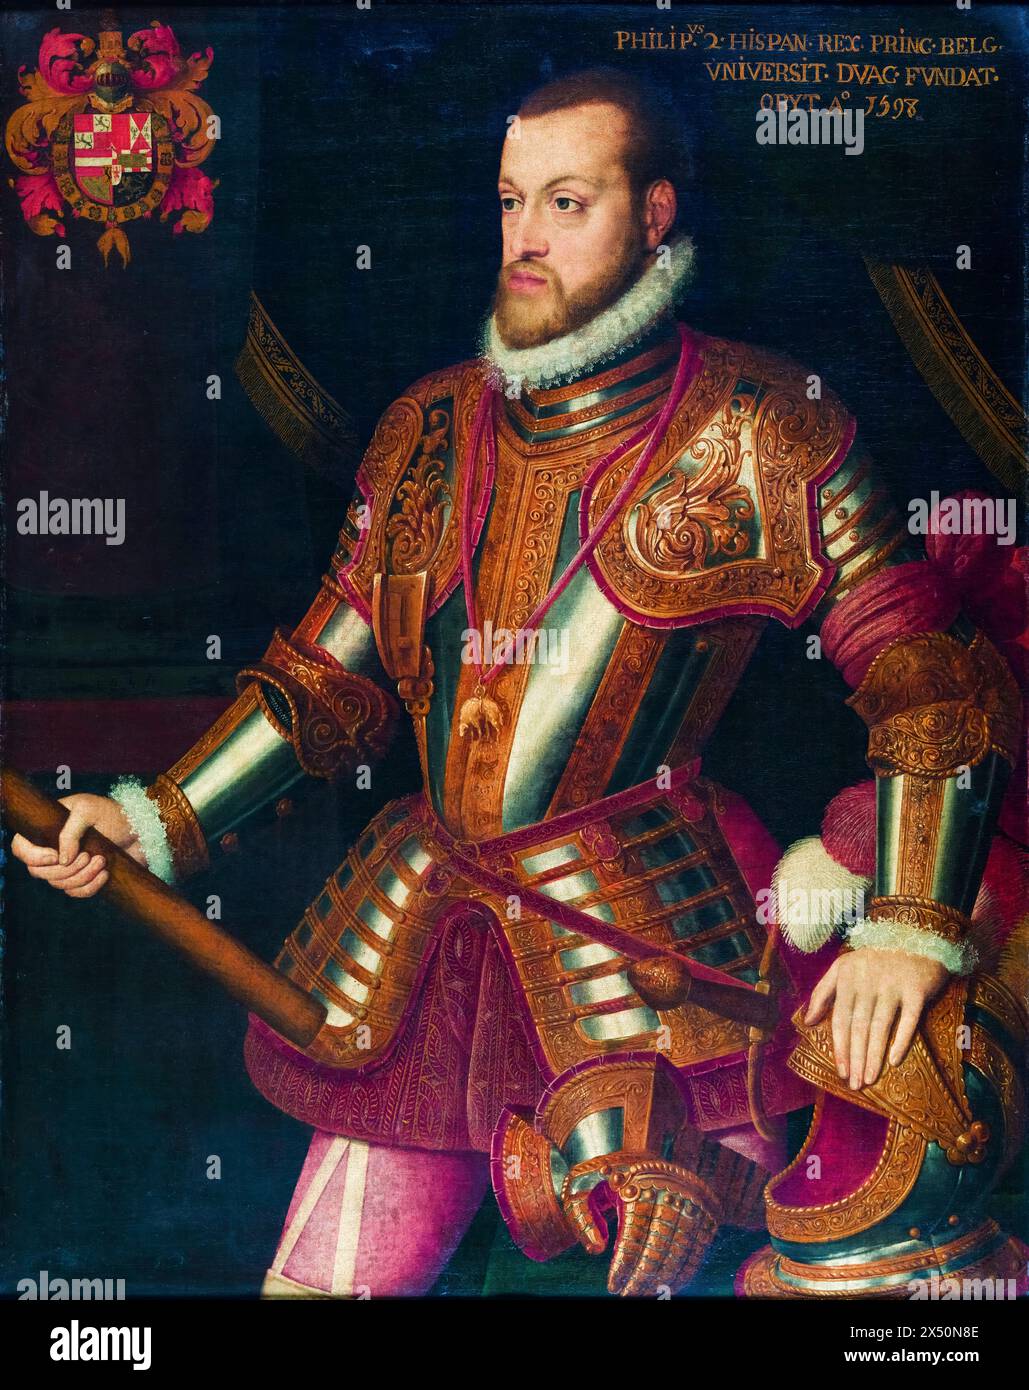 Philippe II (1527-1598), roi d'Espagne, portrait peint à l'huile sur toile, 1550-1575 Banque D'Images